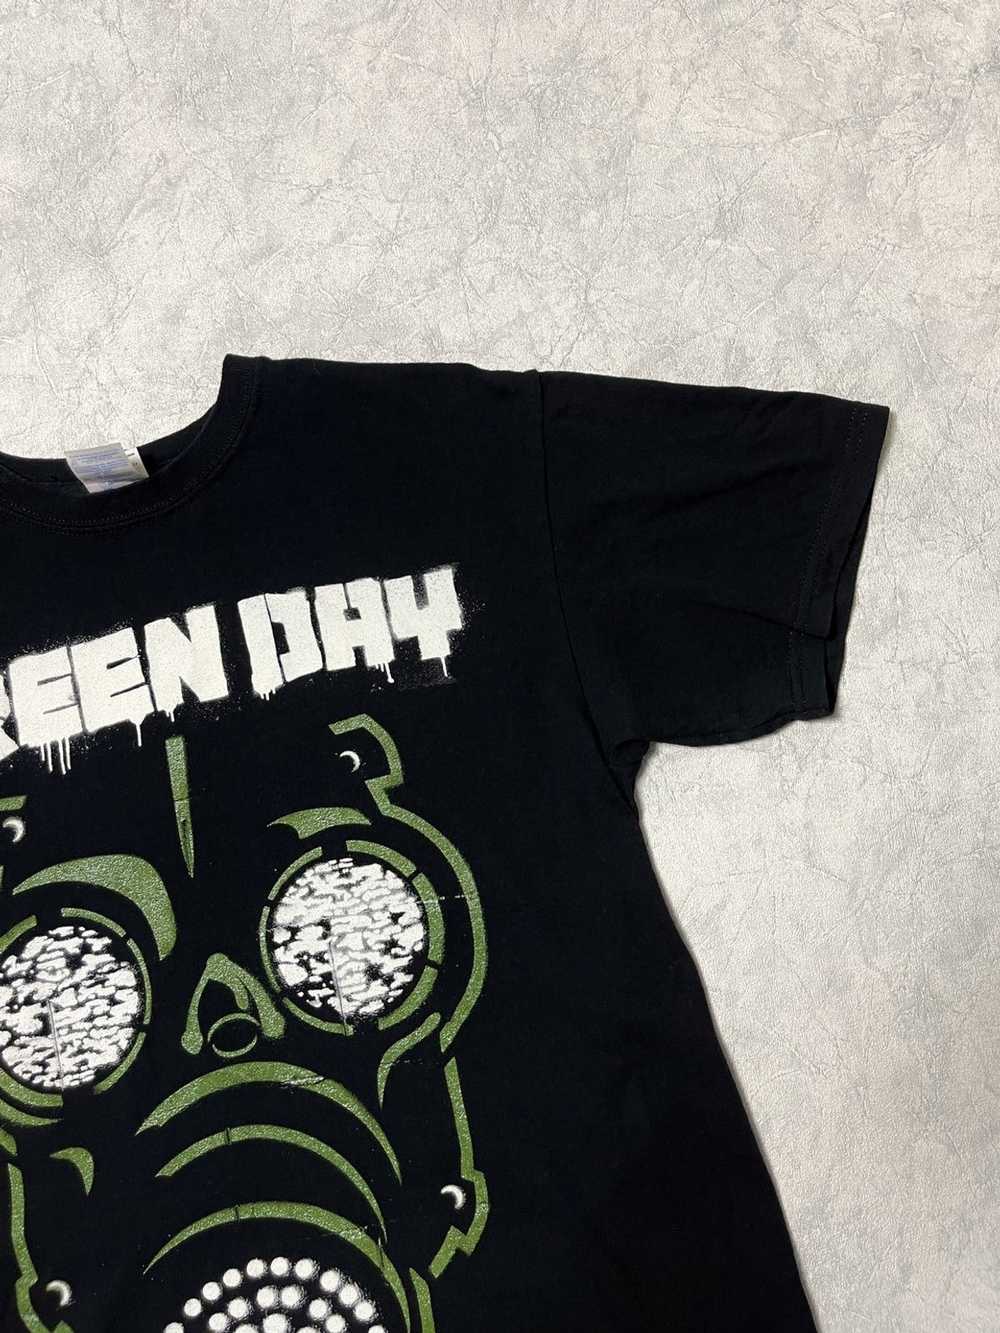 Band Tees × Vintage 2010 Green Day Band T-shirt - image 3